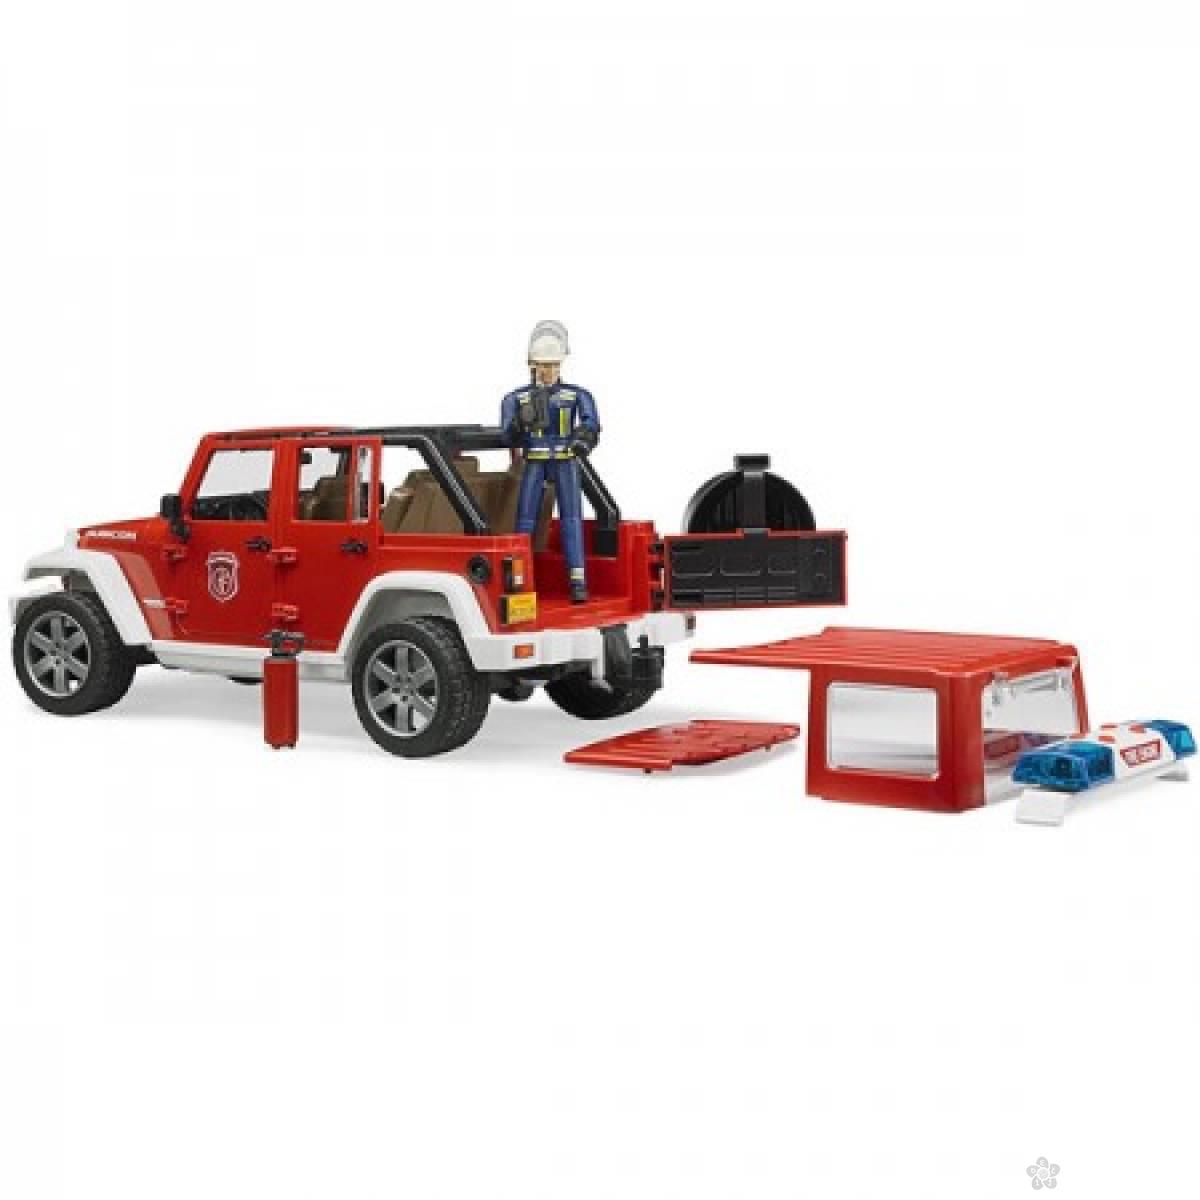 Jeep Wrangler vatrogasni sa figurom 025281 